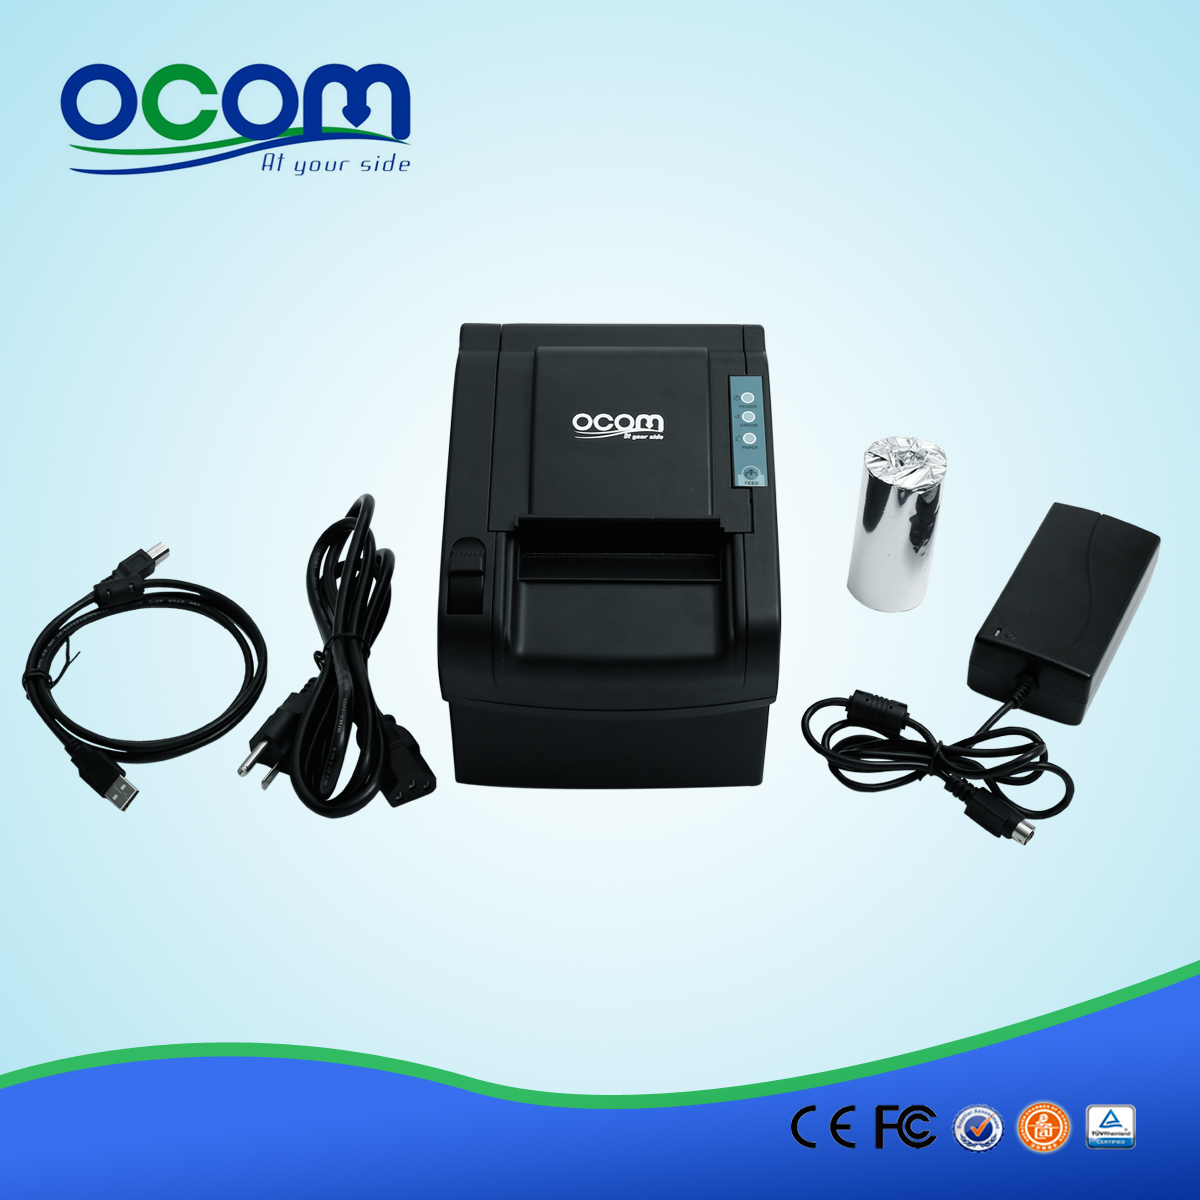 工厂直销 pos80 热敏收据打印机 (OCPP-802)